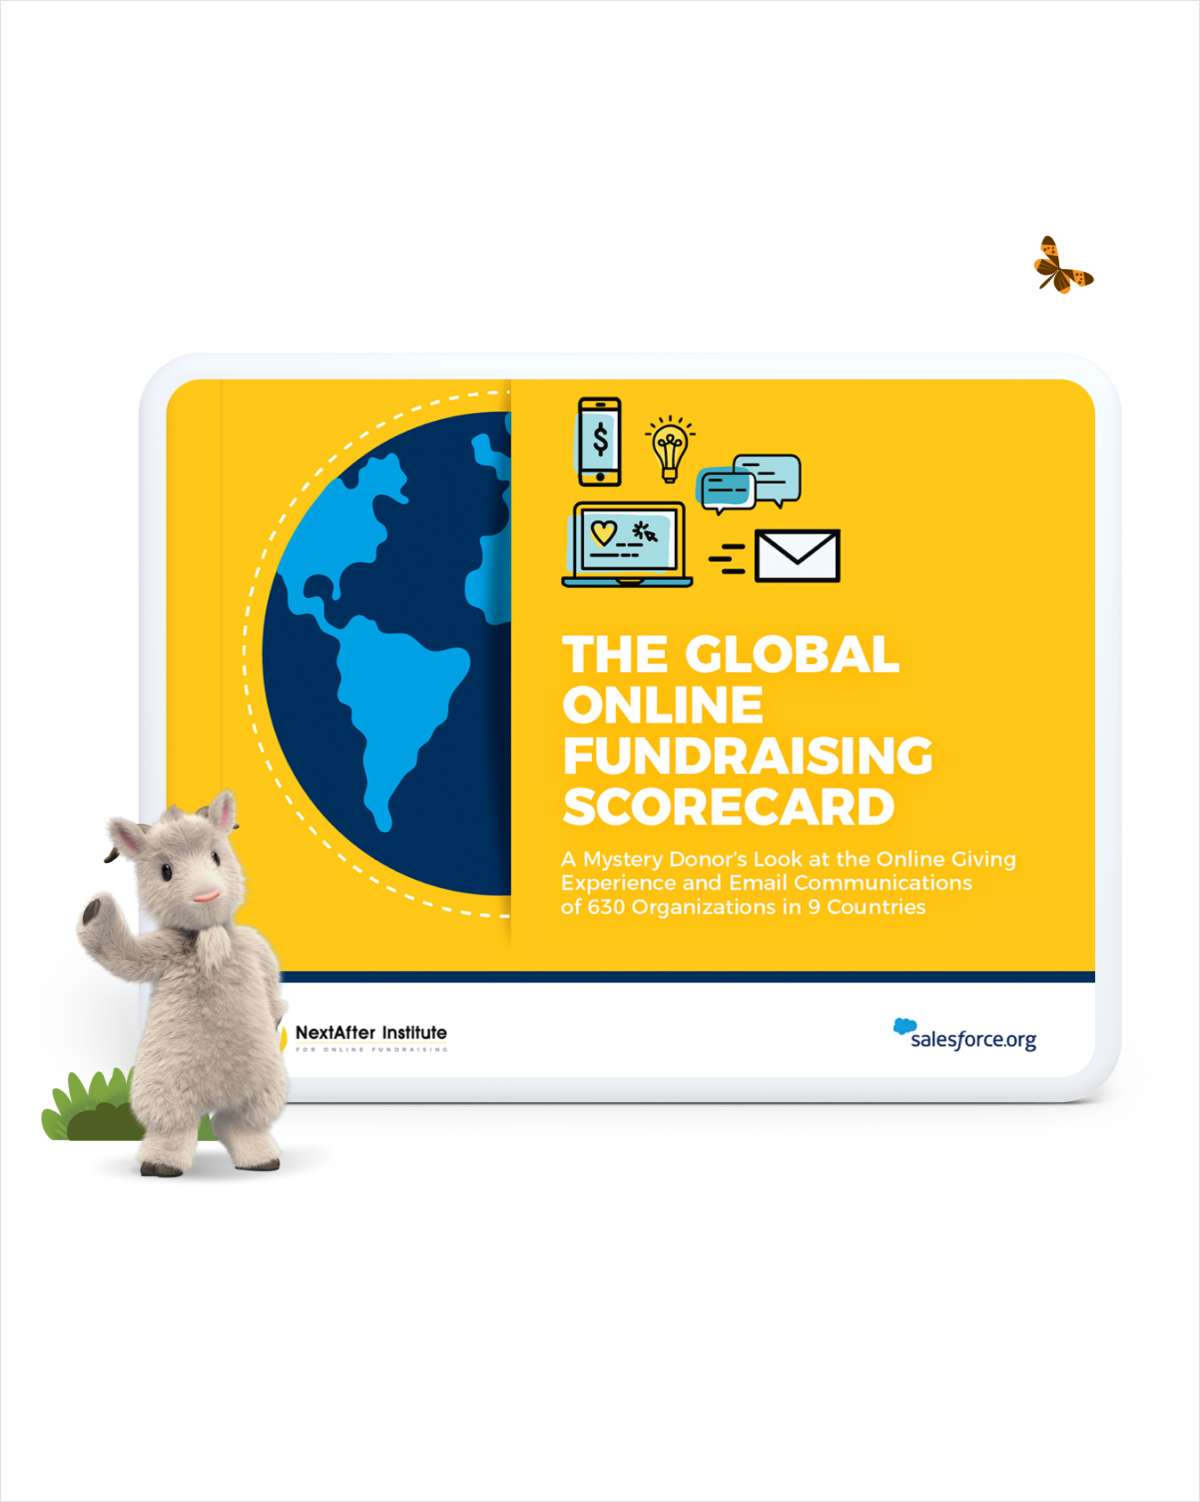 The Global Online Fundraising Scorecard